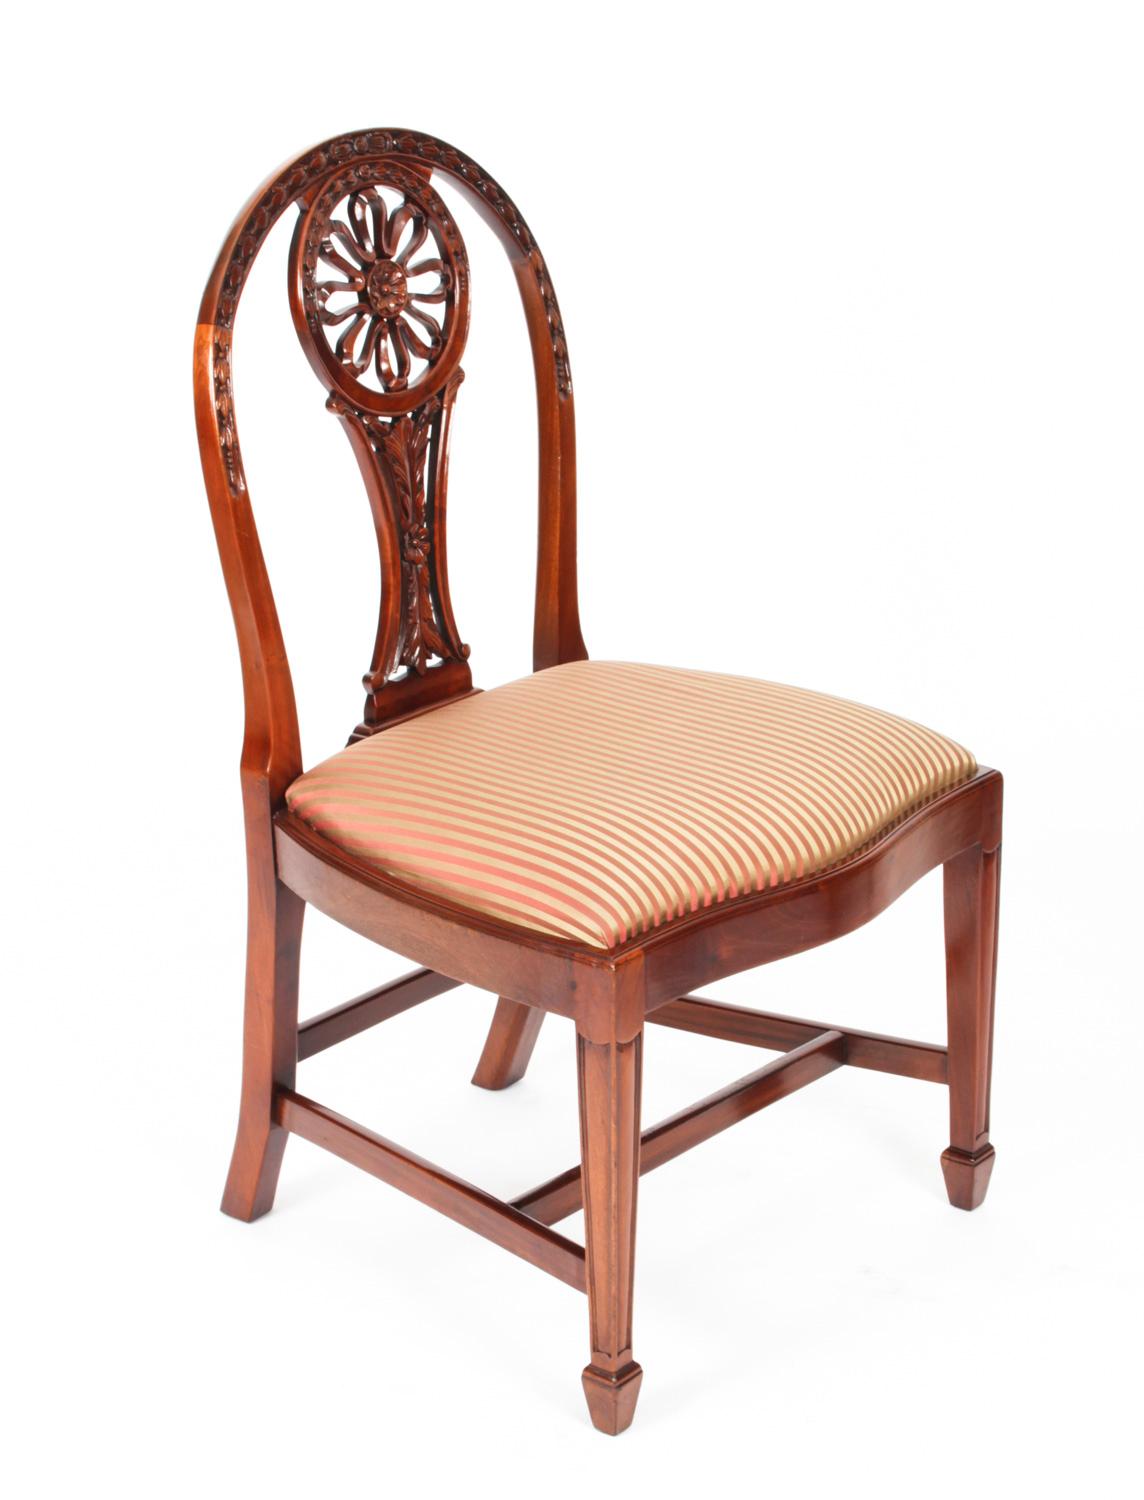 Il s'agit d'un fantastique ensemble anglais vintage de dix chaises à manger en acajou de style néo-Hepplewhite, datant du milieu du 20e siècle....
 
L'ensemble comprend dix chaises d'appoint, les dossiers ovales avec rondelle de soleil façonnée et